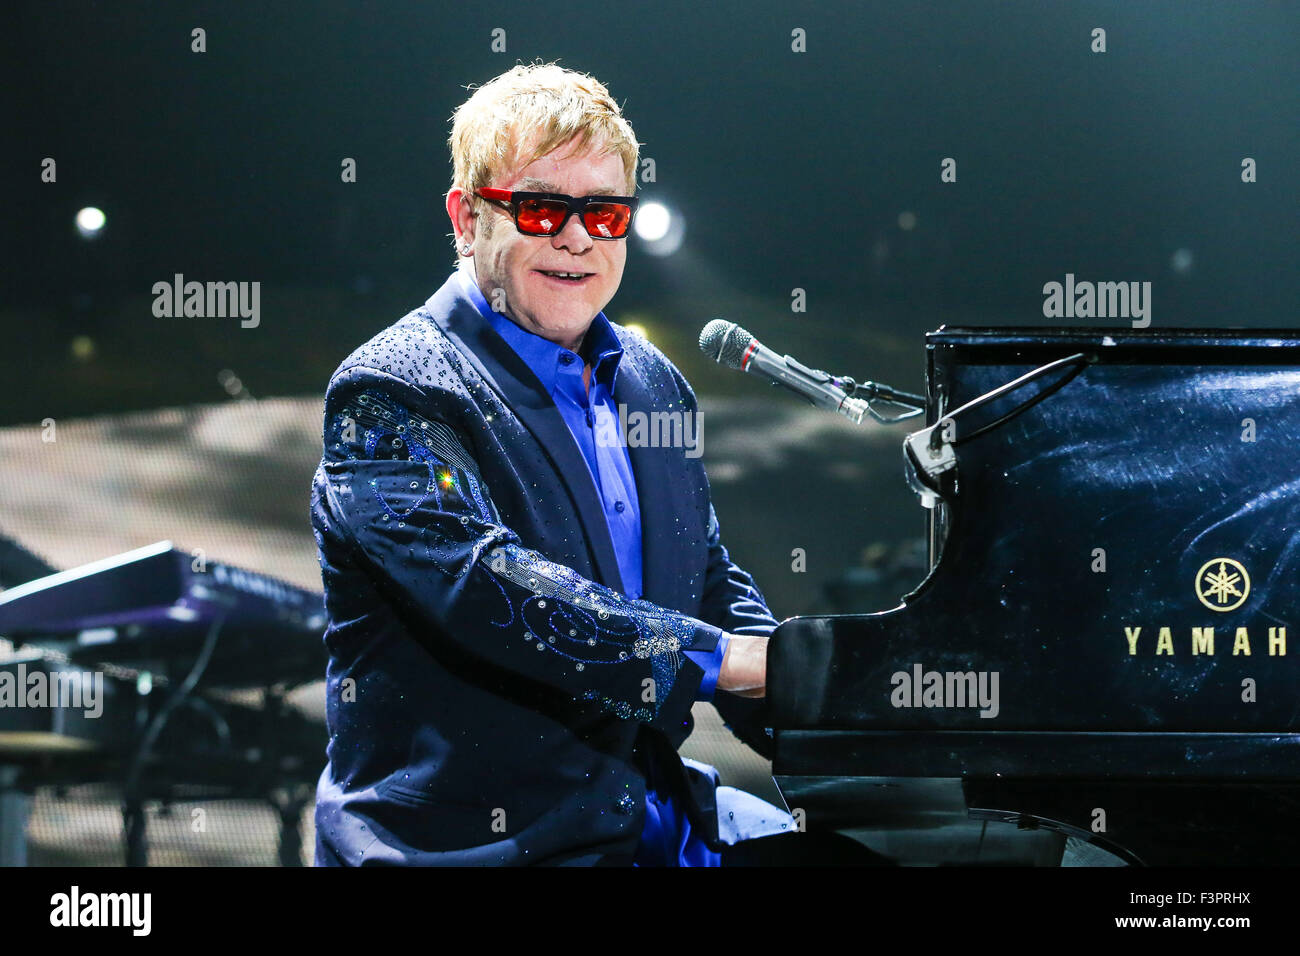 Musique Artiste Sir Elton John joue sur sa tournée mondiale 2015 Banque D'Images